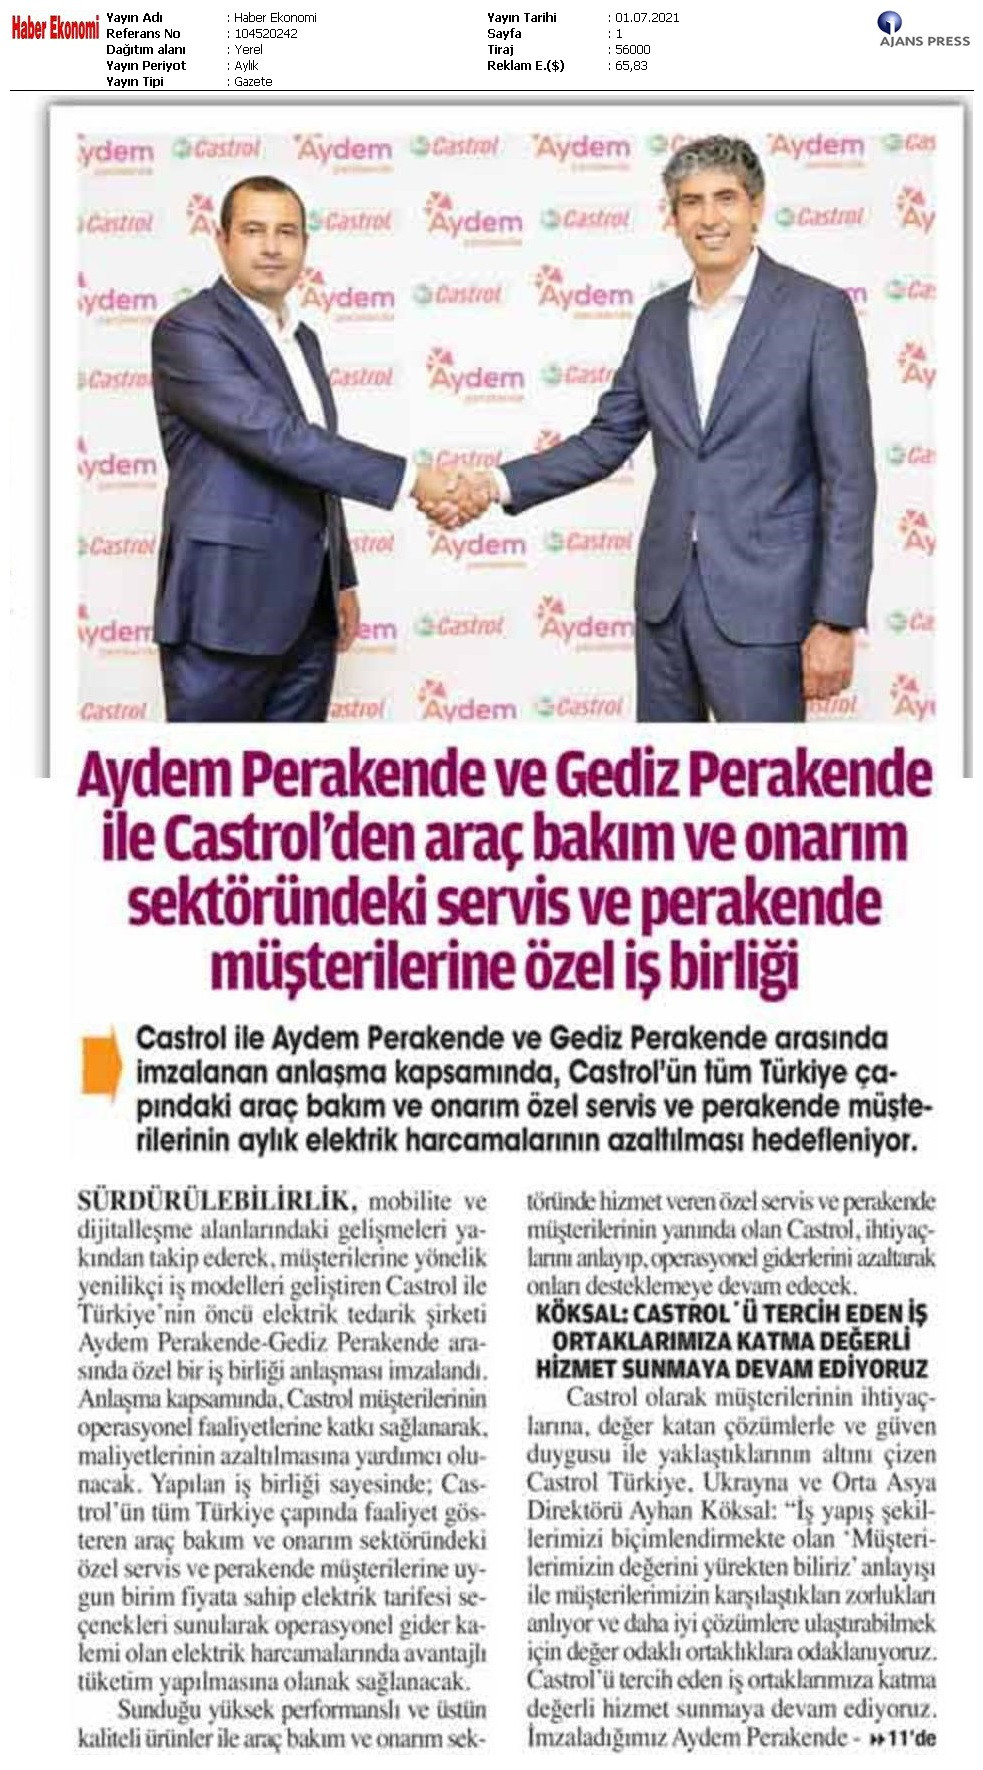  Cooperation between Aydem Perakende and Gediz ve Aydem  Perakende and Castrol 